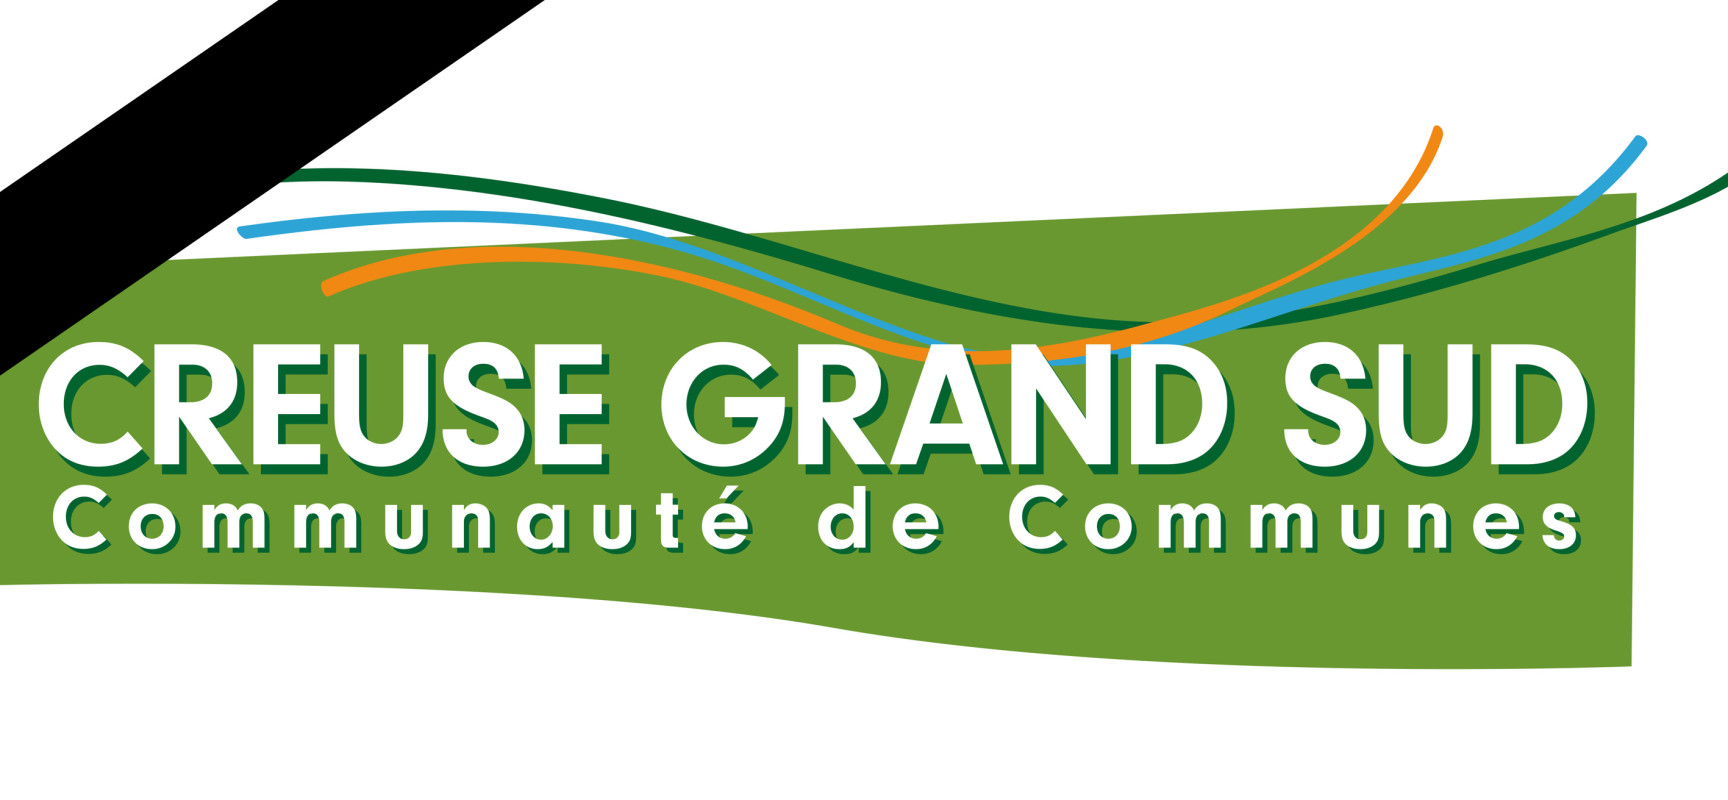 La Communauté de communes Creuse Grand Sud est en deuil